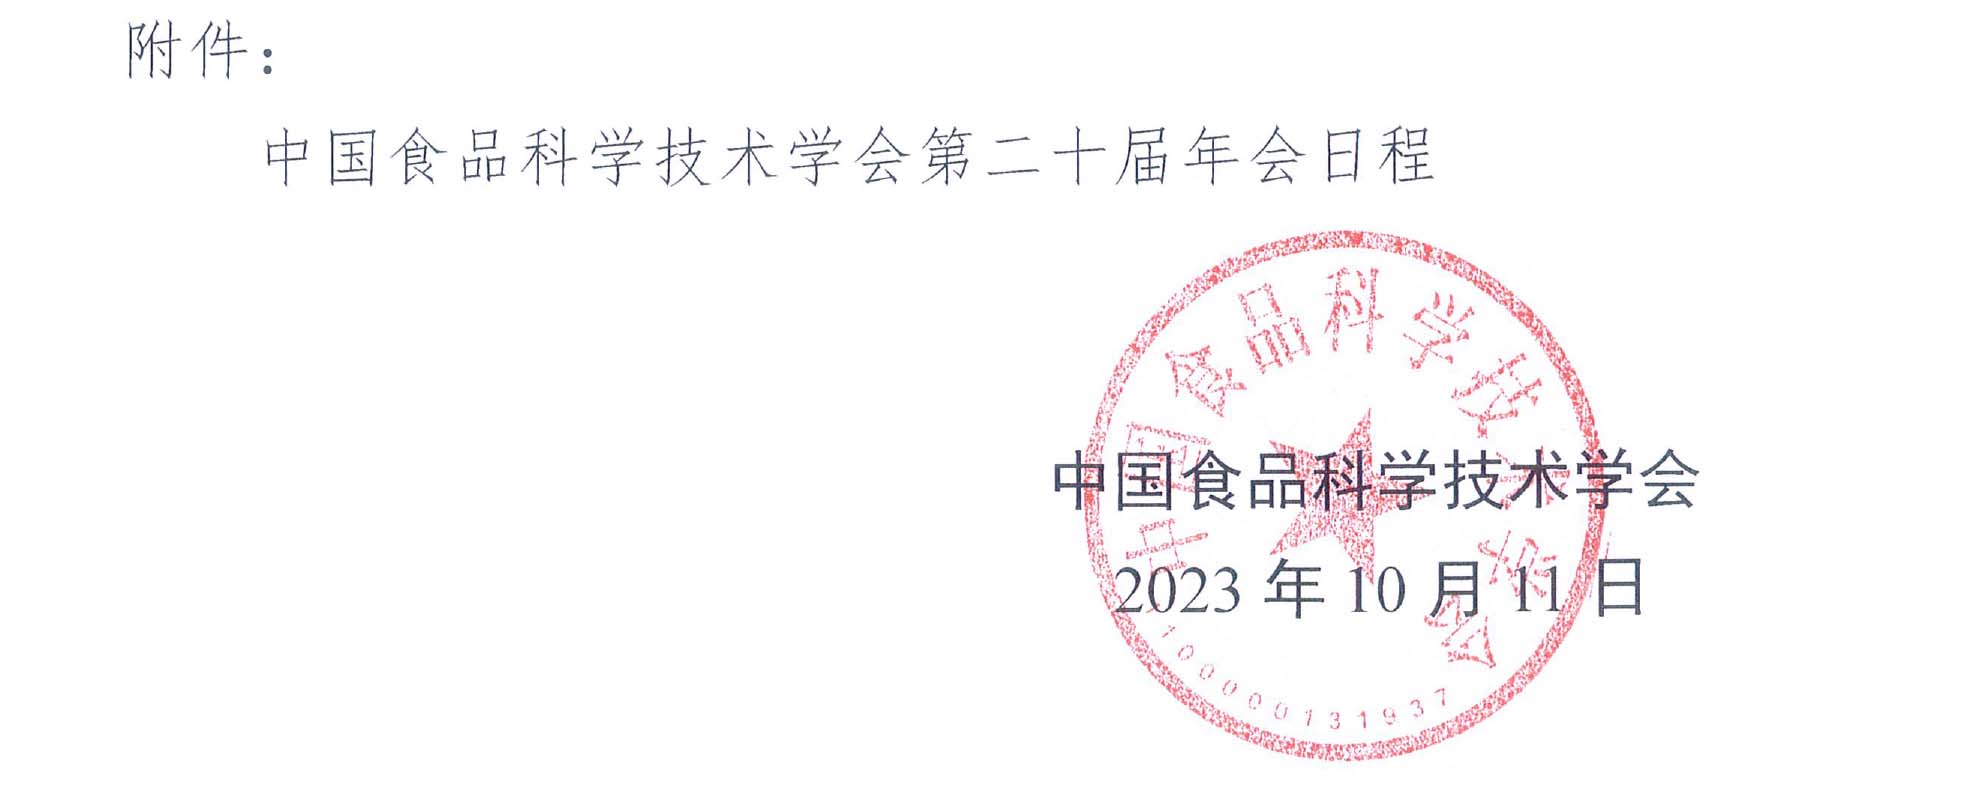 （盖章）-中国食品科学技术学会第二十届年会通知+日程-4.jpg